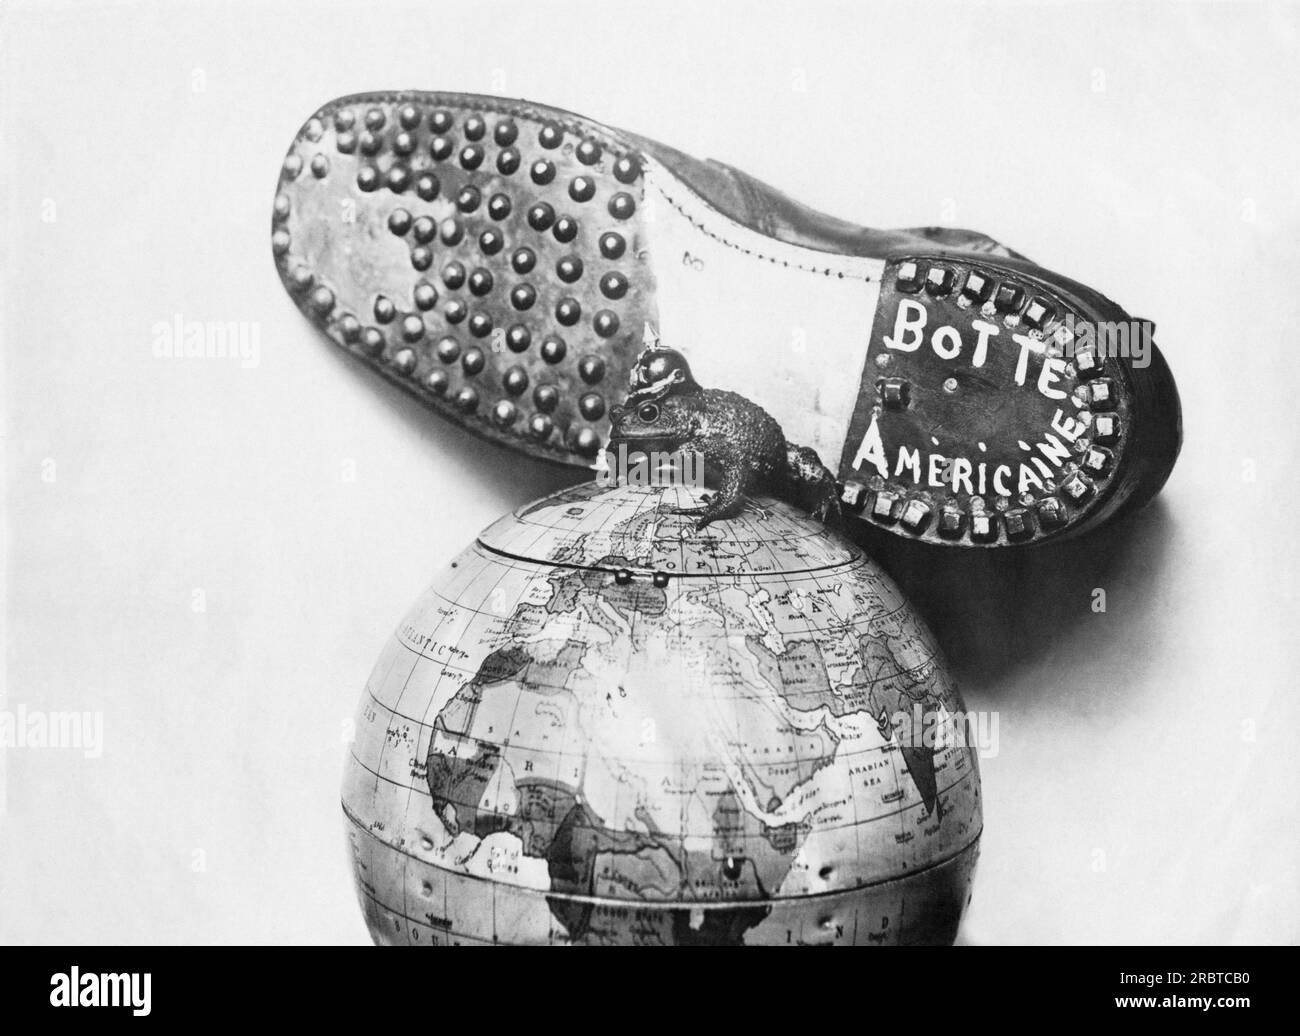 États-Unis : 17 mai 1918 Un dessin animé d'une botte américaine sur le point d'écraser le Kaiser et ses satellites prussiens junker du globe. Le Kaiser est dépeint comme une grenouille géante au sommet du monde. Banque D'Images